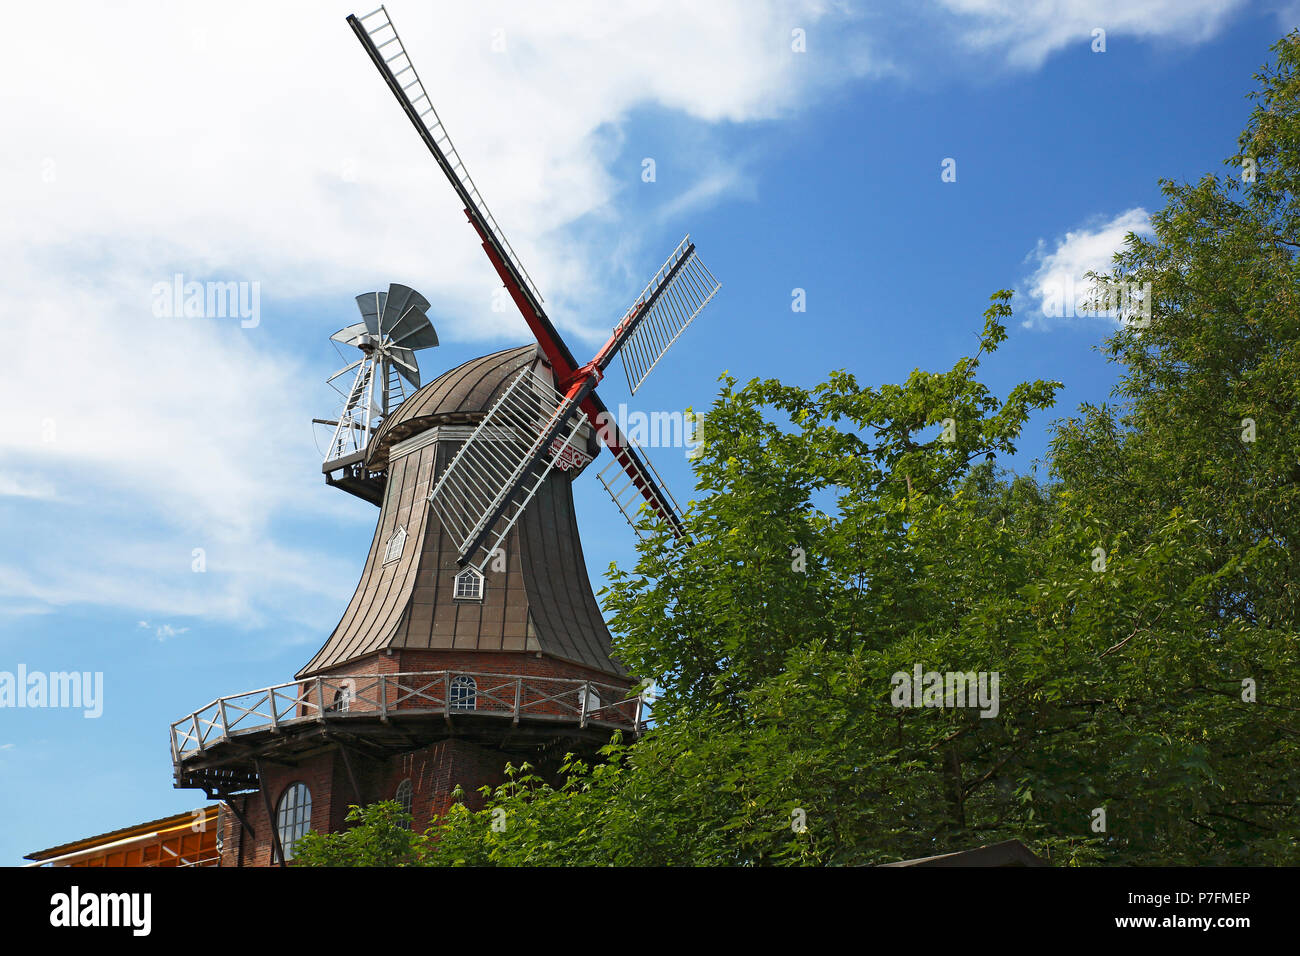 Wehbers Mühle, Windmill, Galerieholländer, Niedersächsische Mühlenstraße, Himmelpforten, Lower Saxony, Germany Stock Photo